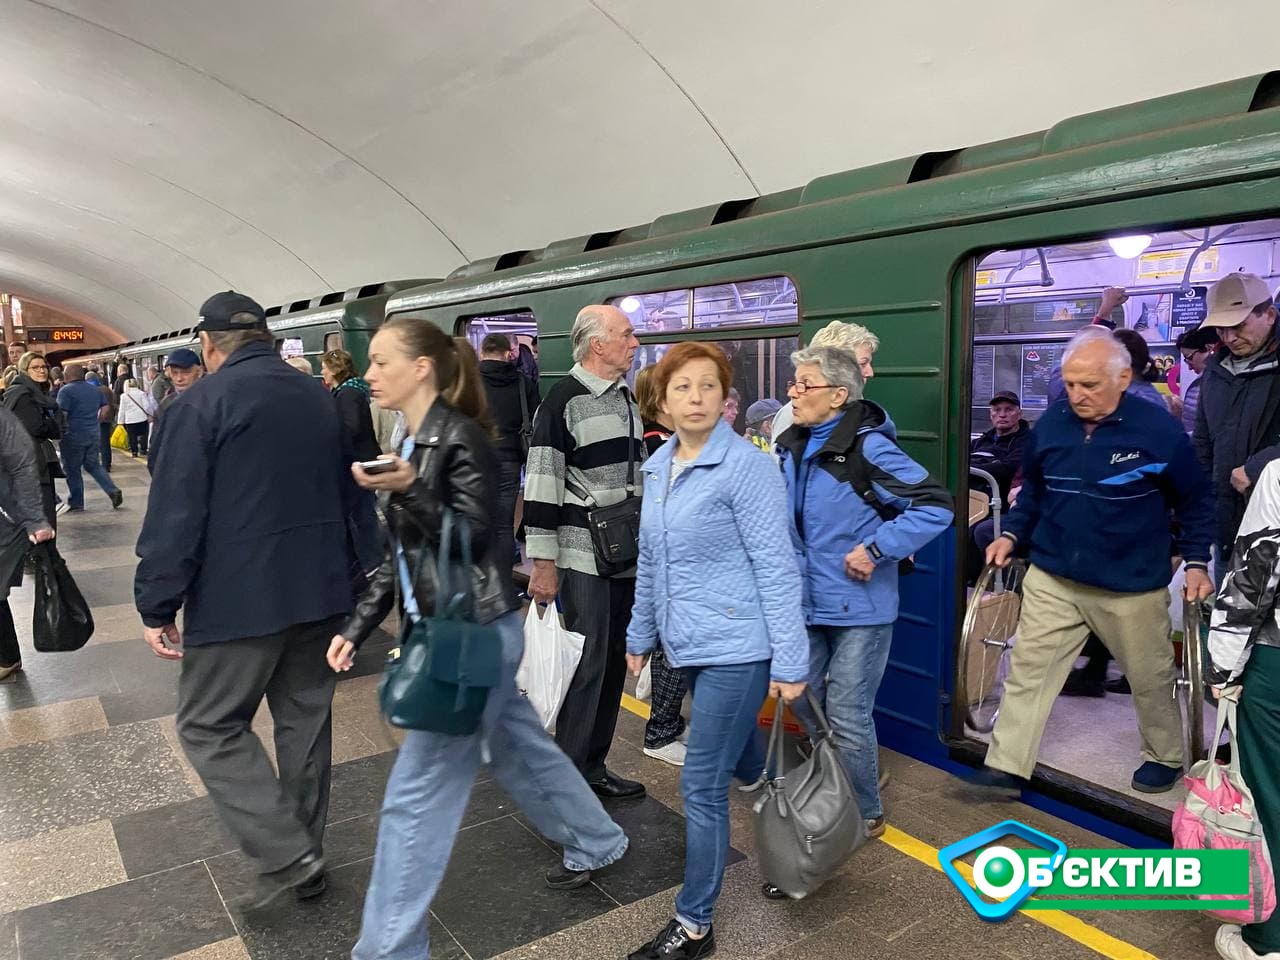 Бесплатный проезд в Харьковском метрополитене будет действовать две недели: что будет с ценами дальше